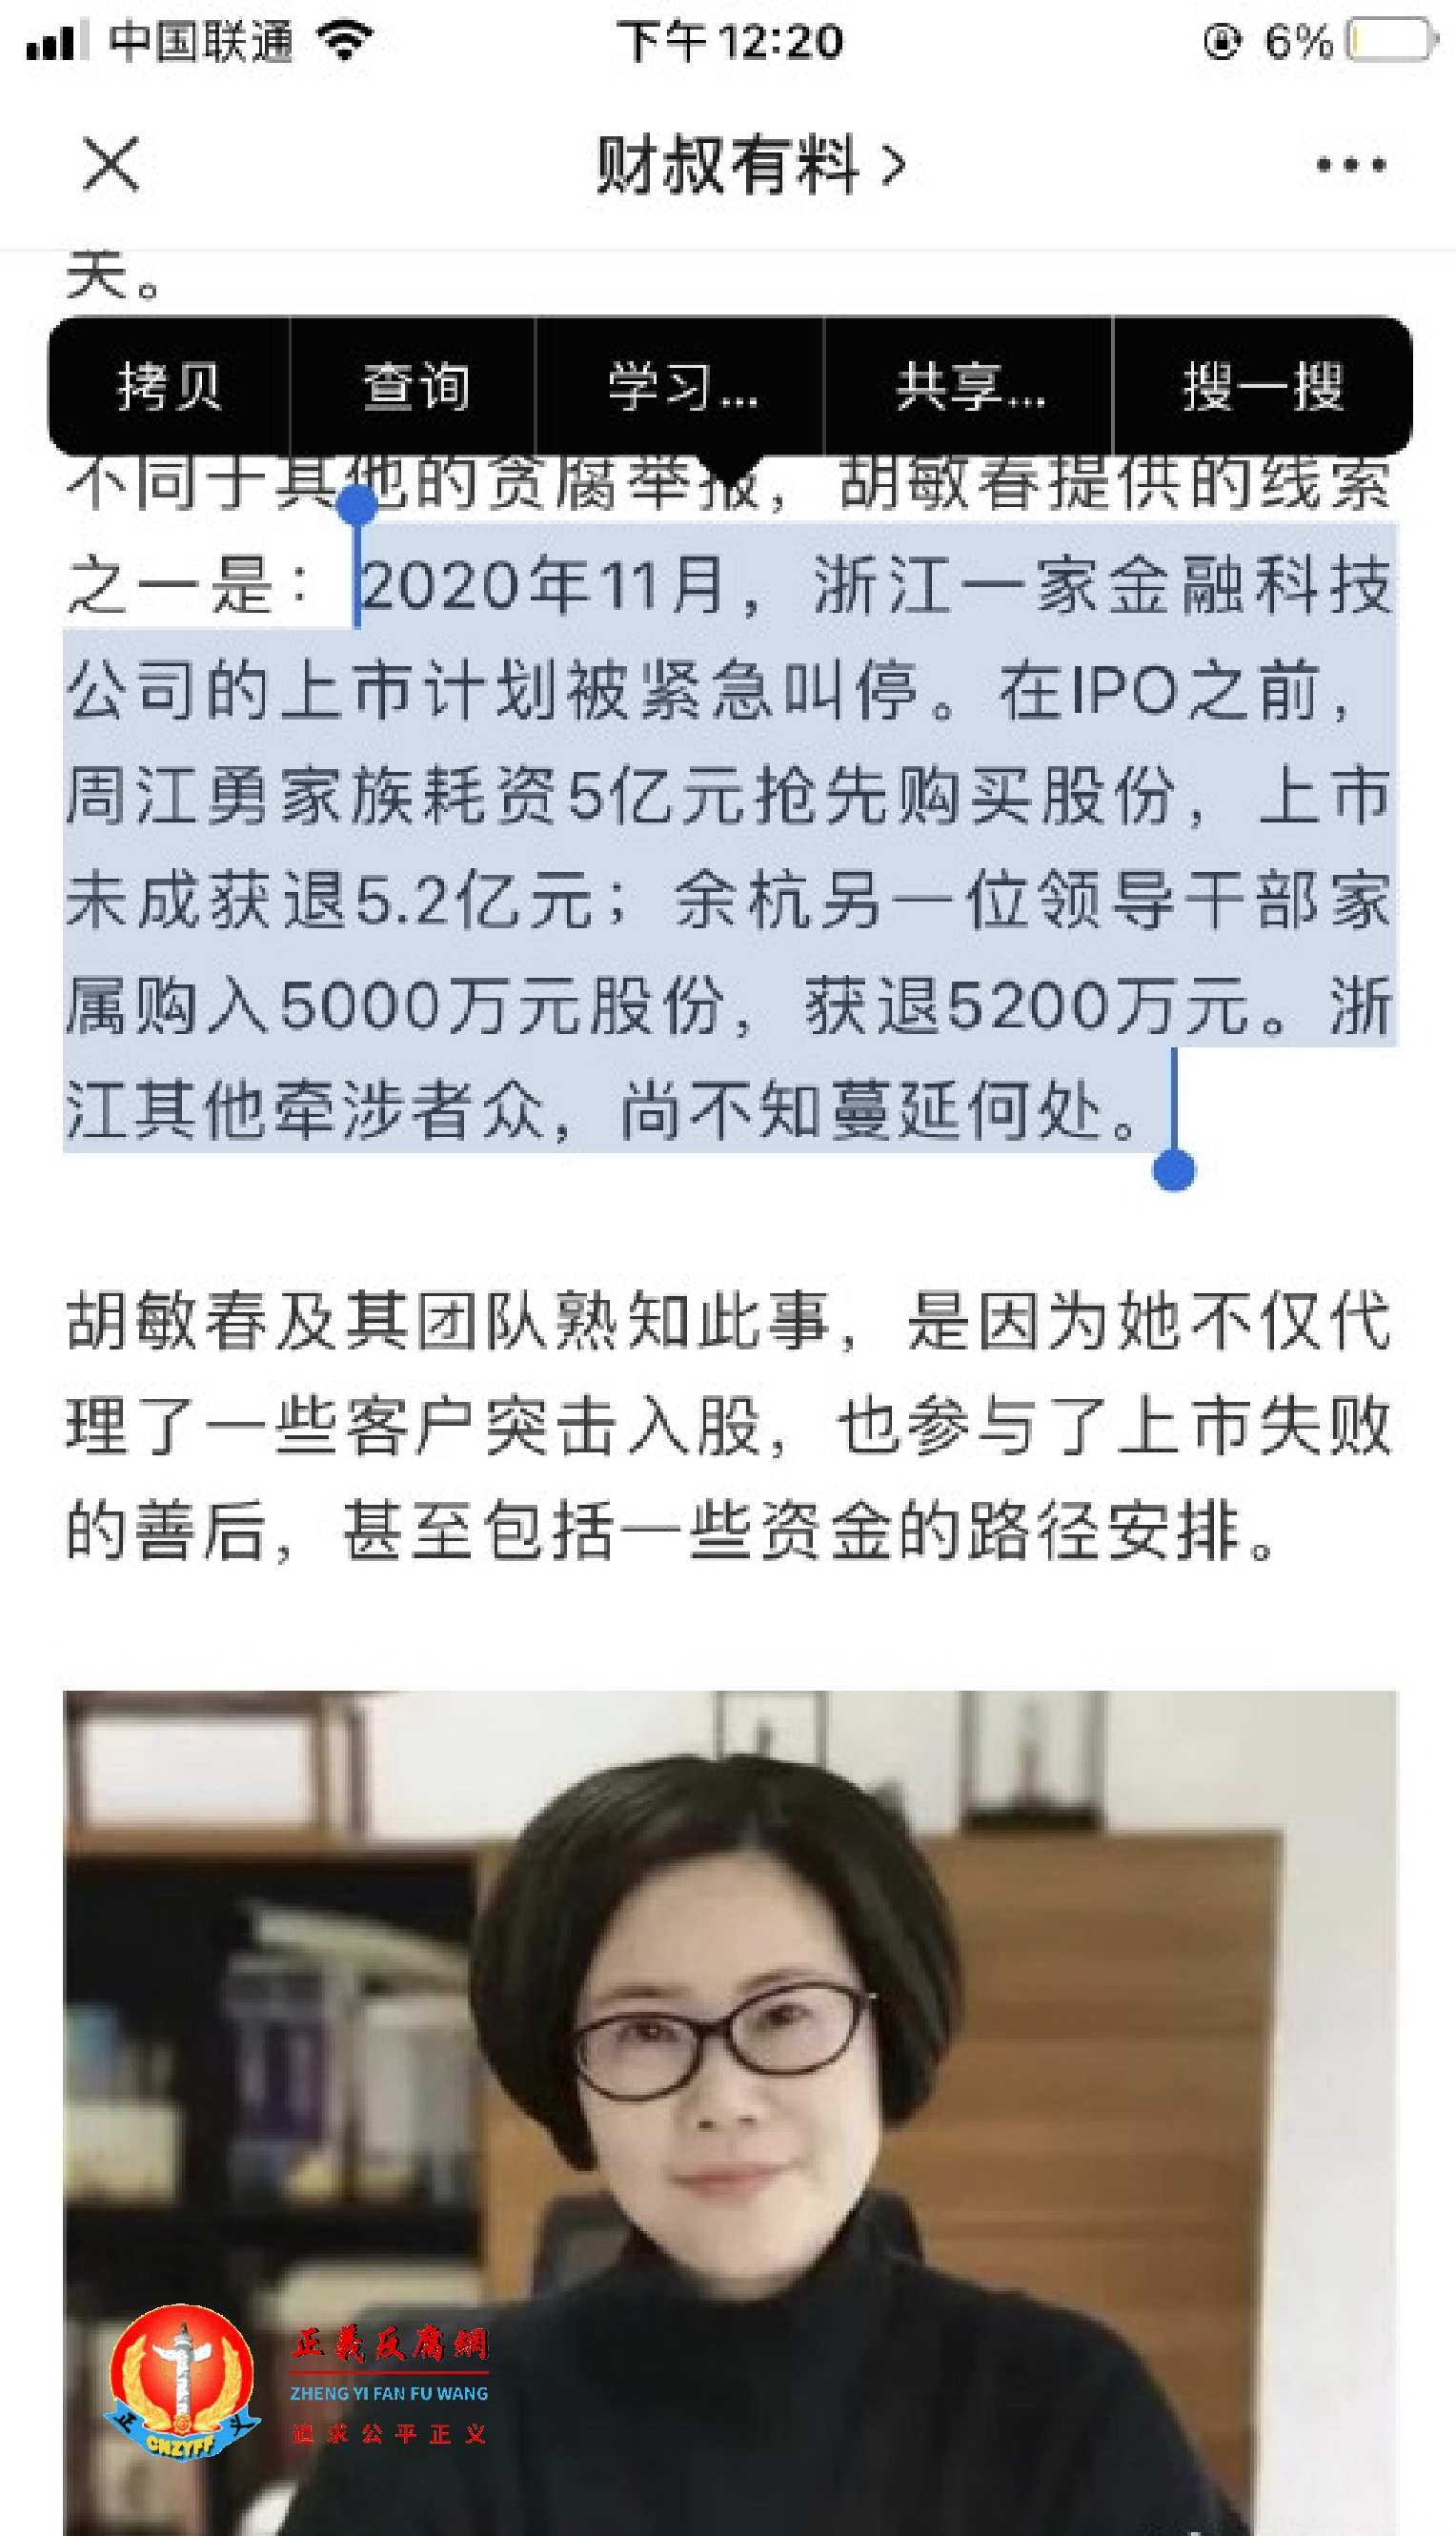 微信公众号披露这一波浙江官场周江勇落马与女律师的检举有关。 (2).png